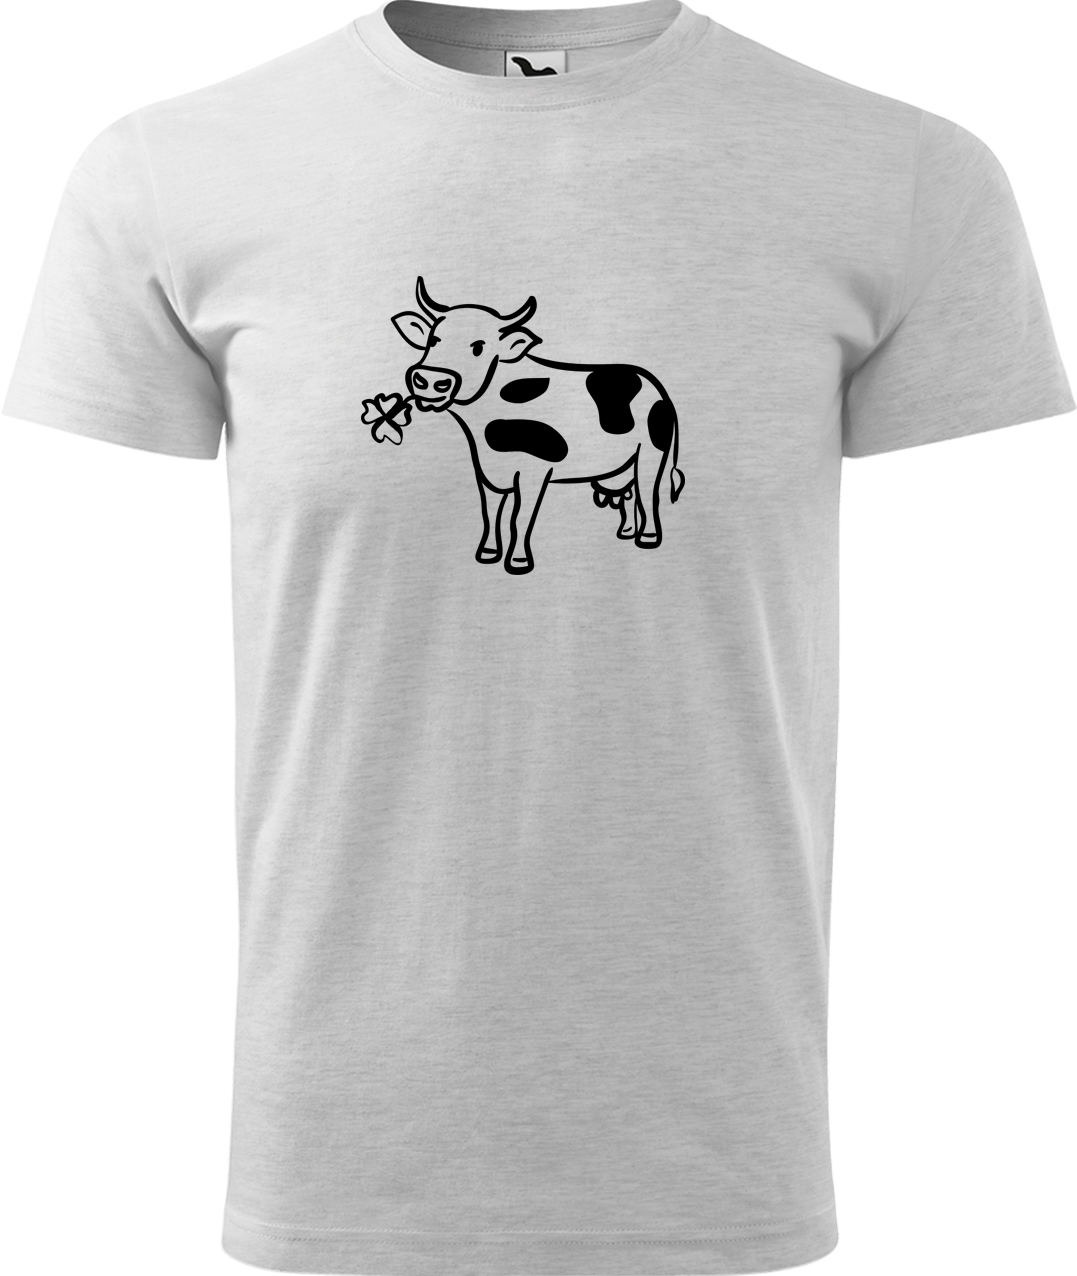 Pánské tričko s krávou - Kravička a jetel Velikost: S, Barva: Světle šedý melír (03), Střih: pánský